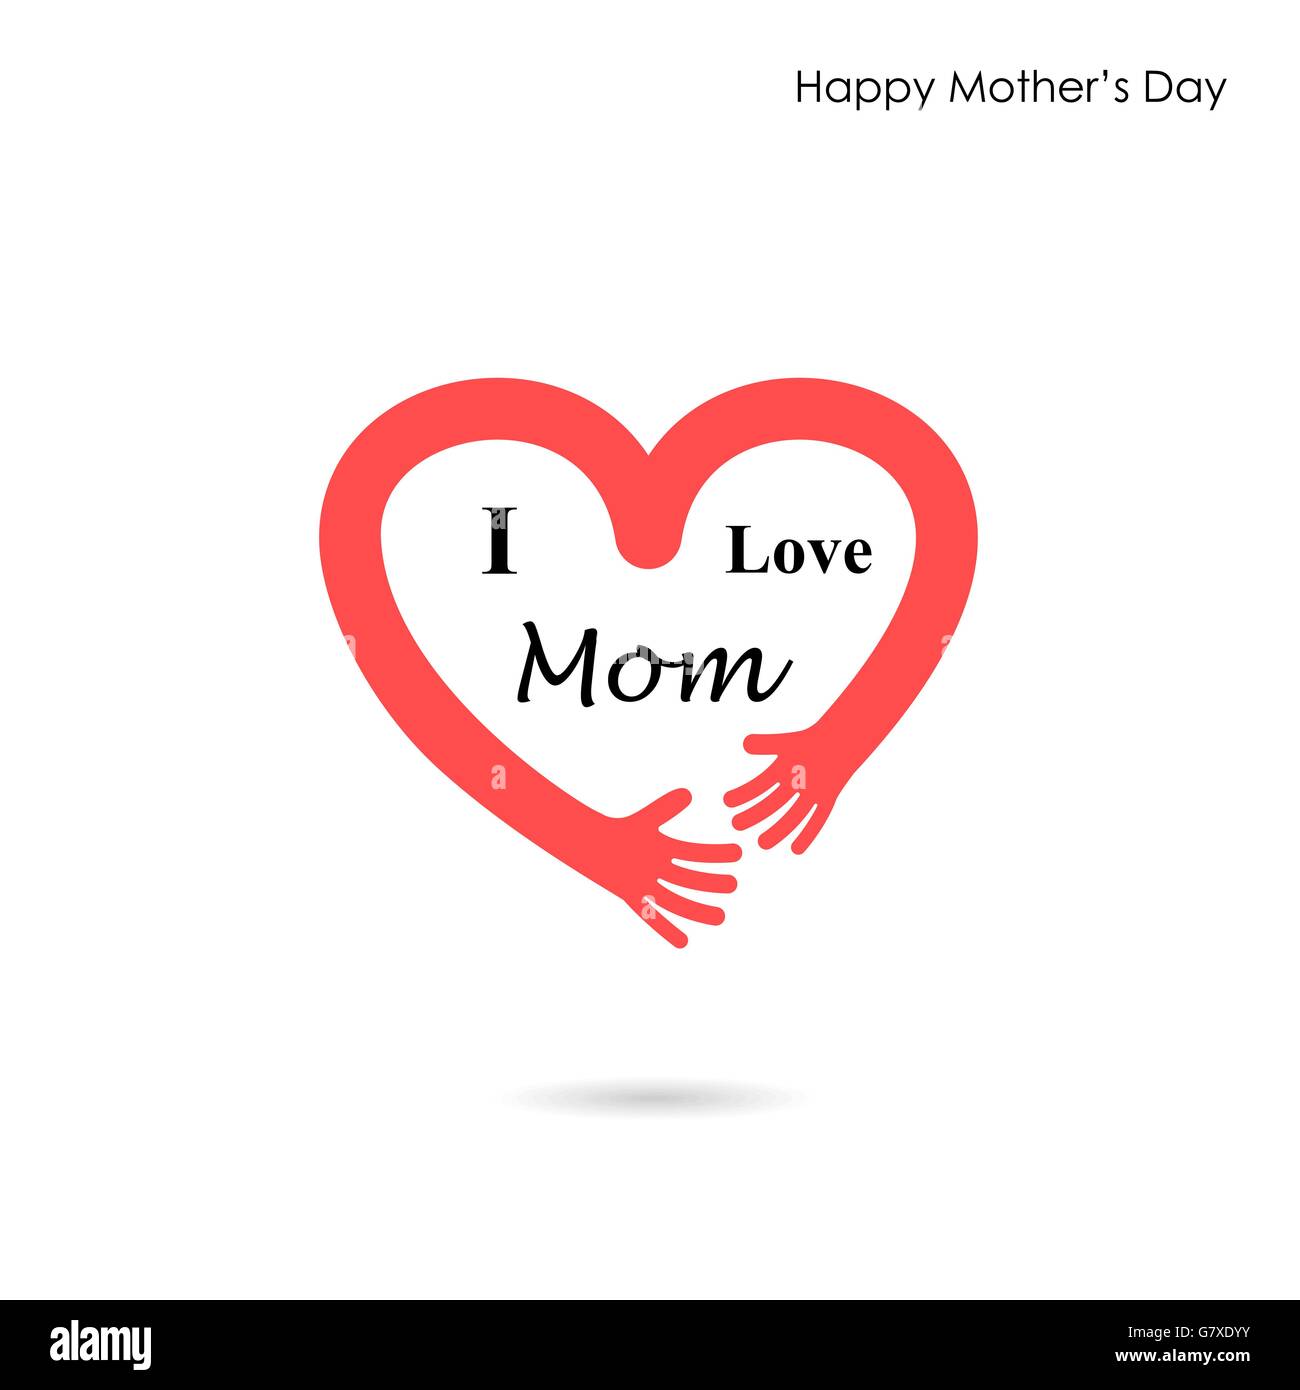 Glückliche Mütter Day.Love Herzen Care Logo. Liebe und glückliche Mutter Tag Hintergrund Konzept. Vektor-illustration Stock Vektor